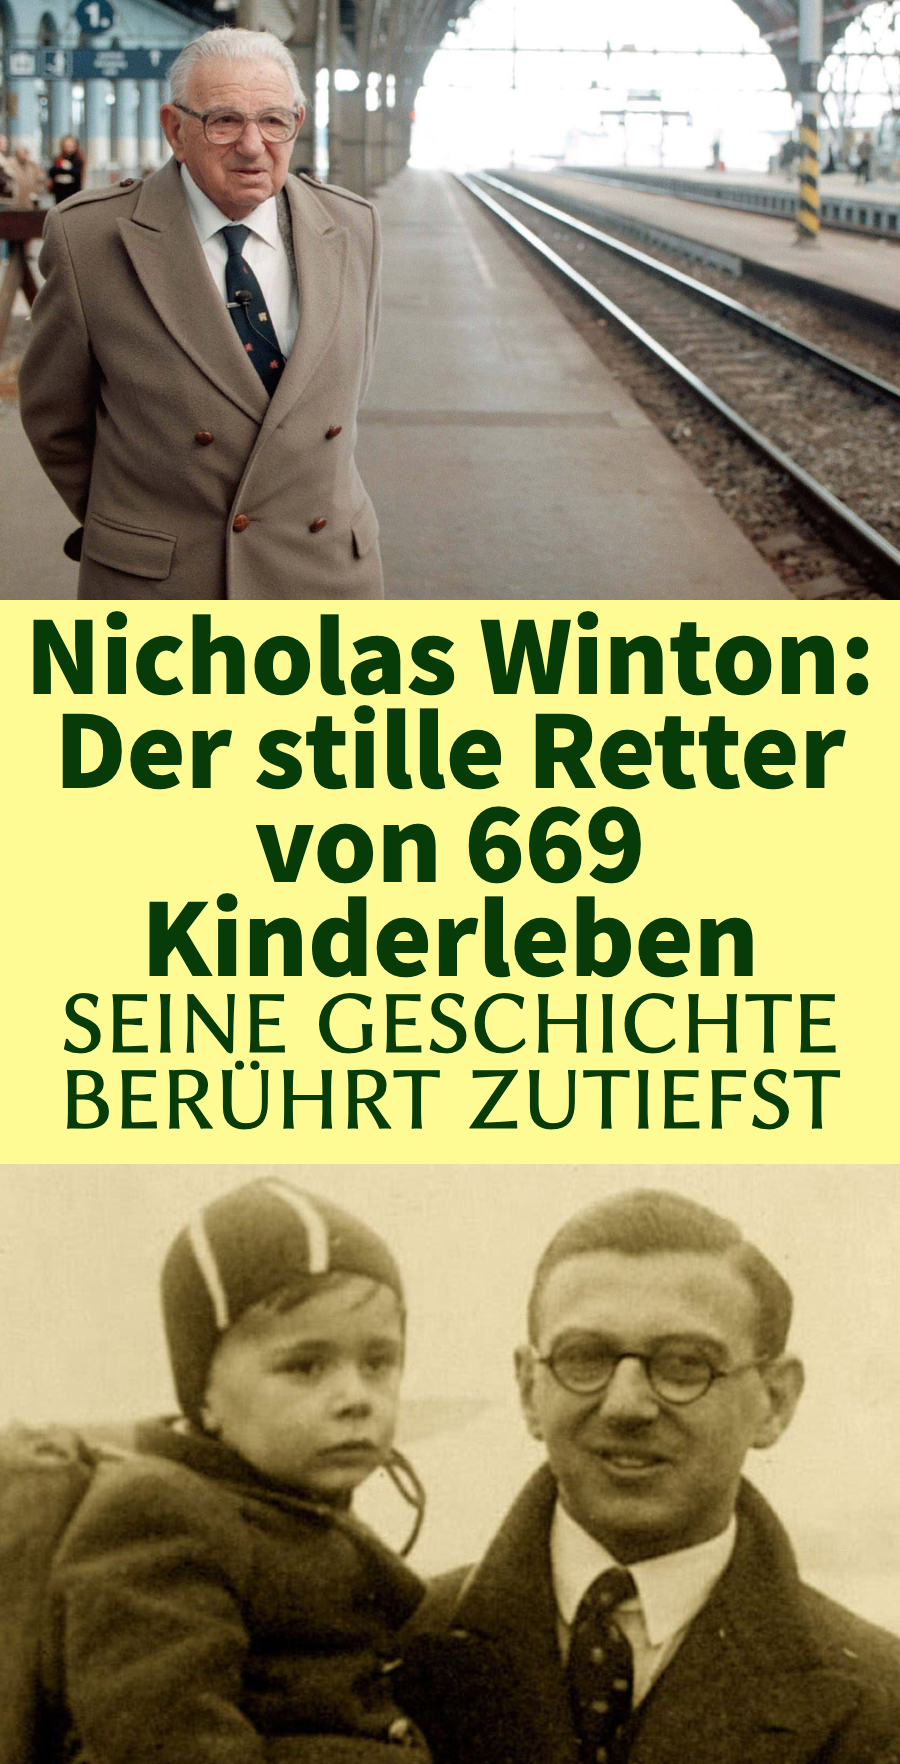 Nicholas Winton rettete 669 Kinderleben. Er merkt nicht, dass er mitten unter ihnen sitzt